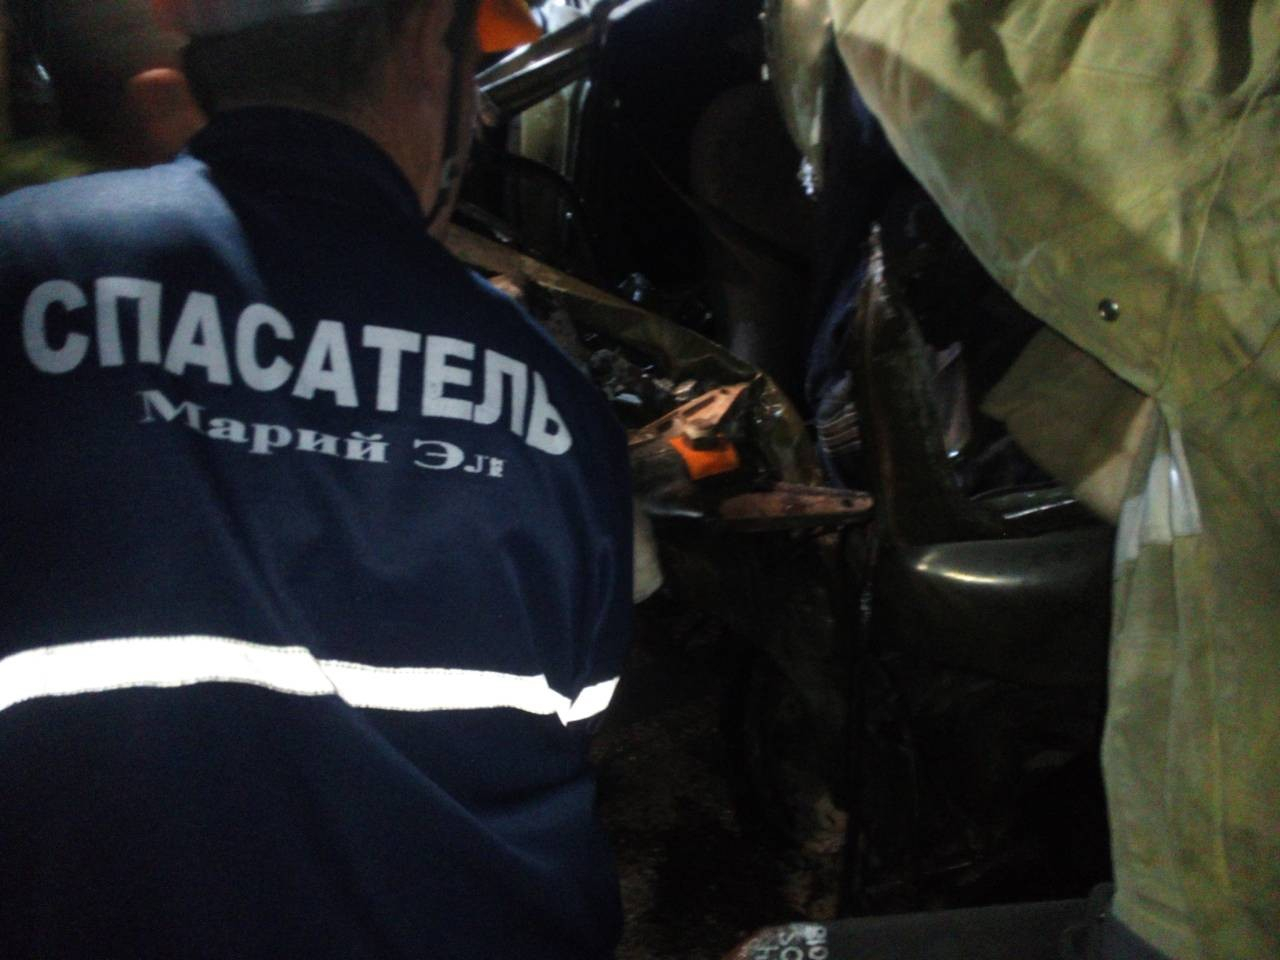 На Казанском тракте в Марий Эл легковушка улетела в кювет, спасатели вытаскивали водителя